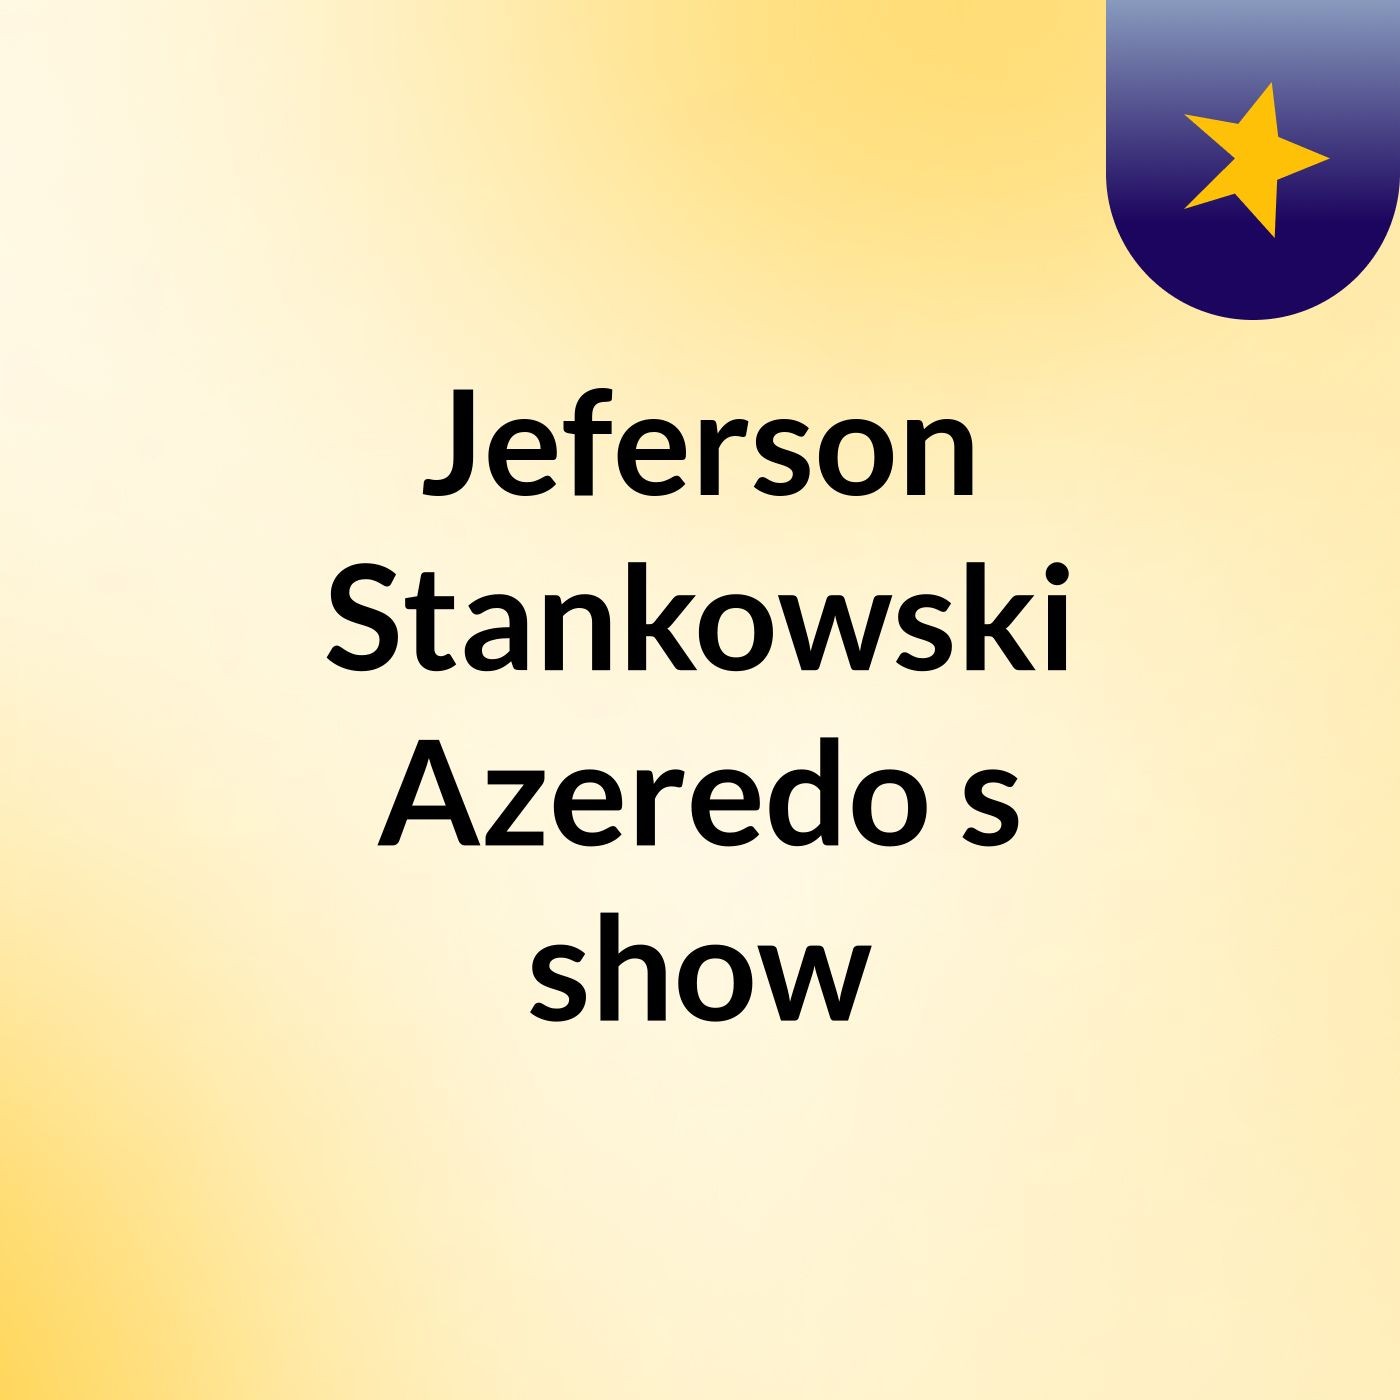 Jeferson Stankowski Azeredo's show